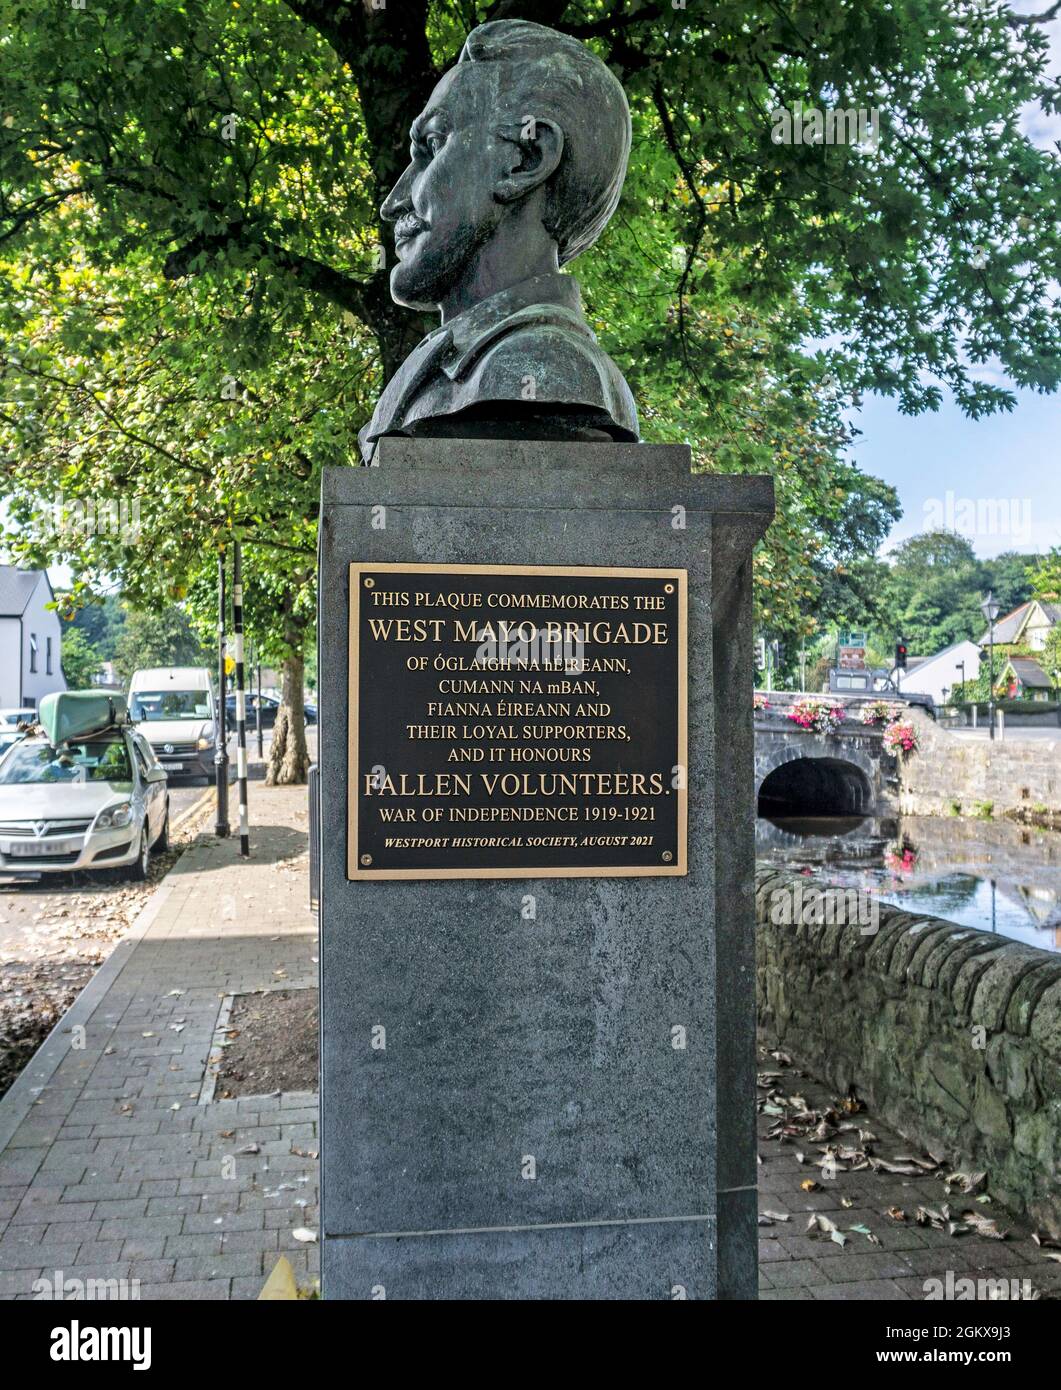 Eine Gedenktafel zum Gedenken an den irischen Unabhängigkeitskrieg (1919-1921), die an einer Büste des irischen republikanischen Führers John MacBride befestigt ist. Stockfoto